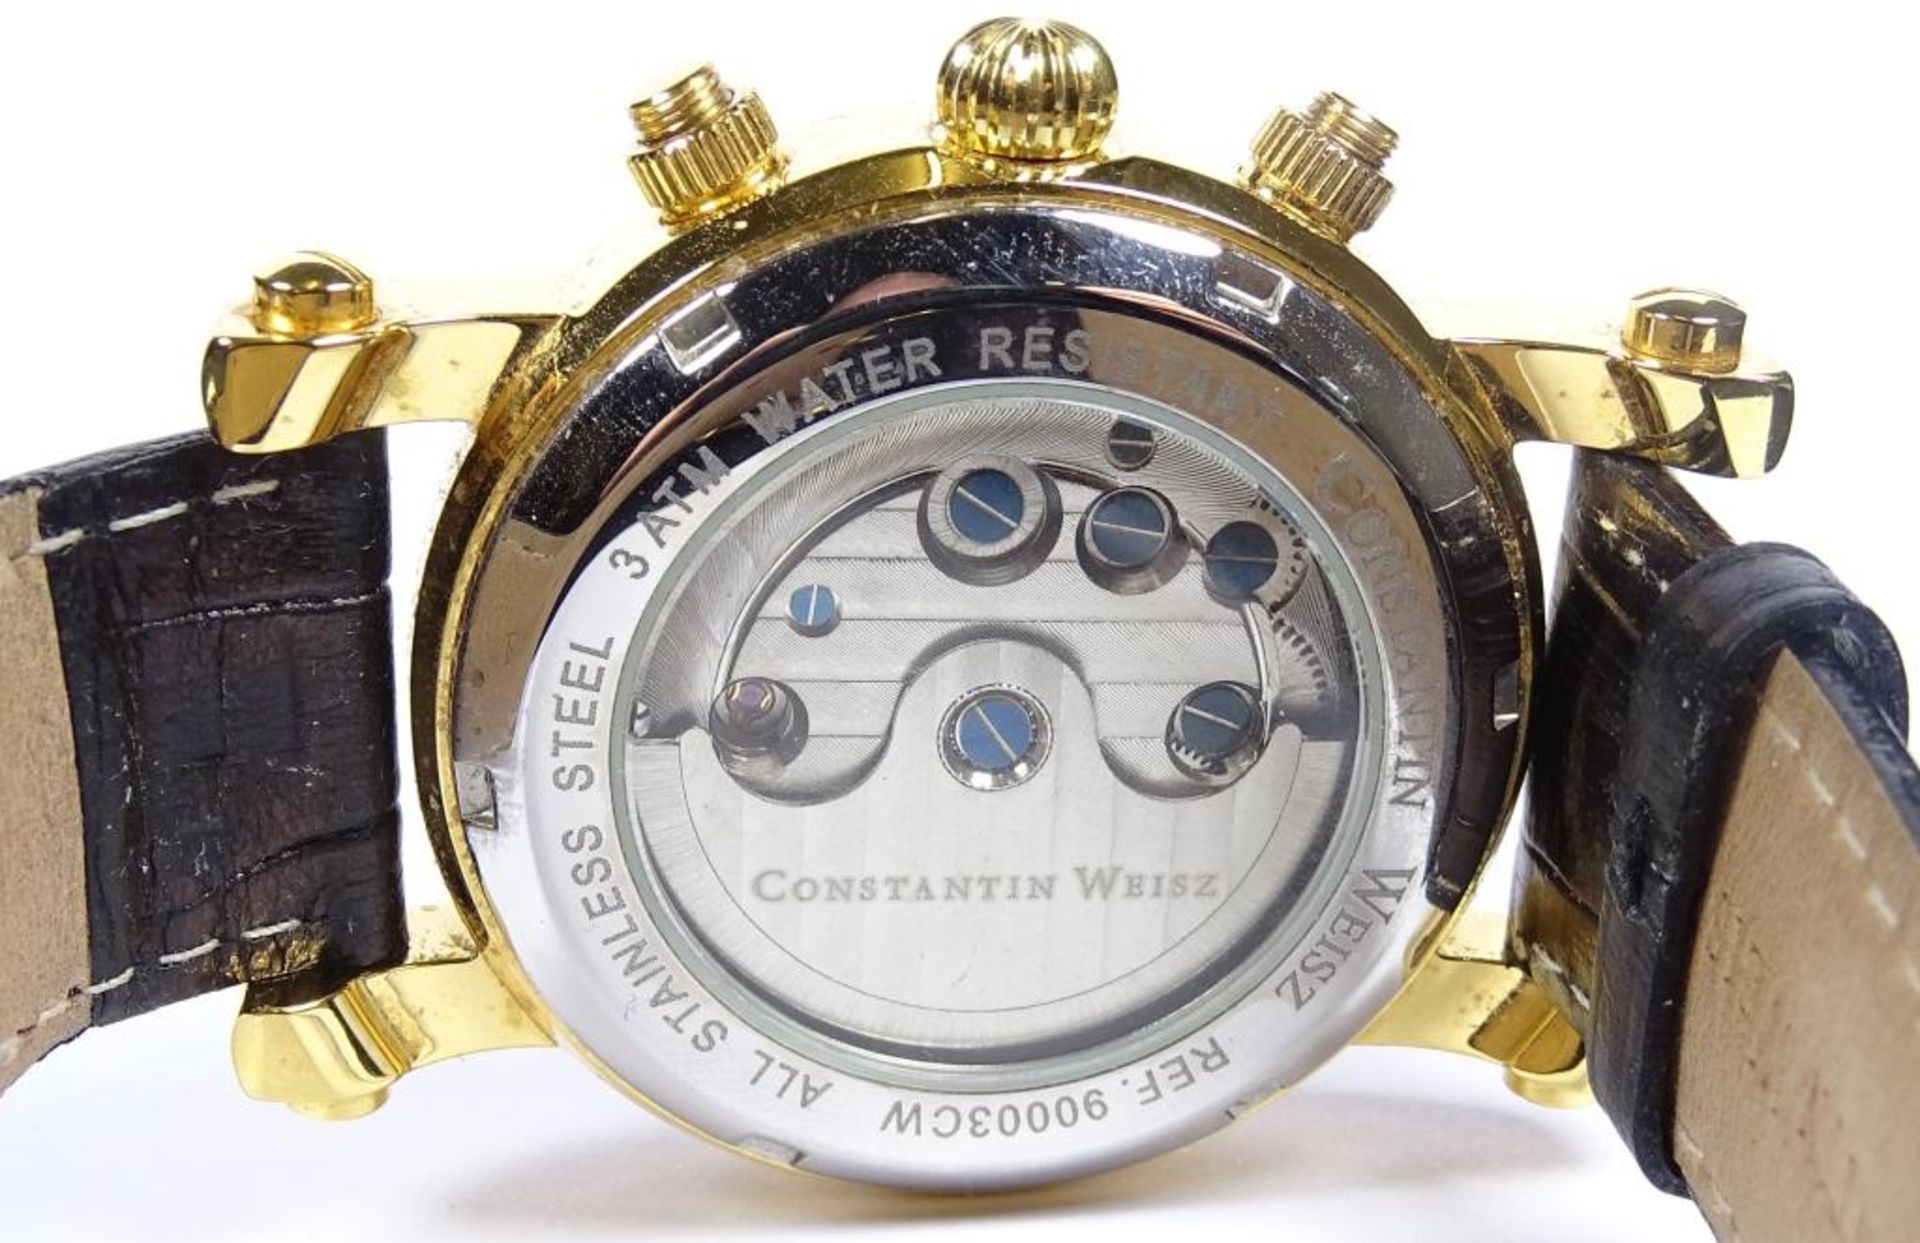 Armbanduhr "Constantin Weisz",automatik,Werk läuft,vergoldet,guter Zustan - Bild 4 aus 4